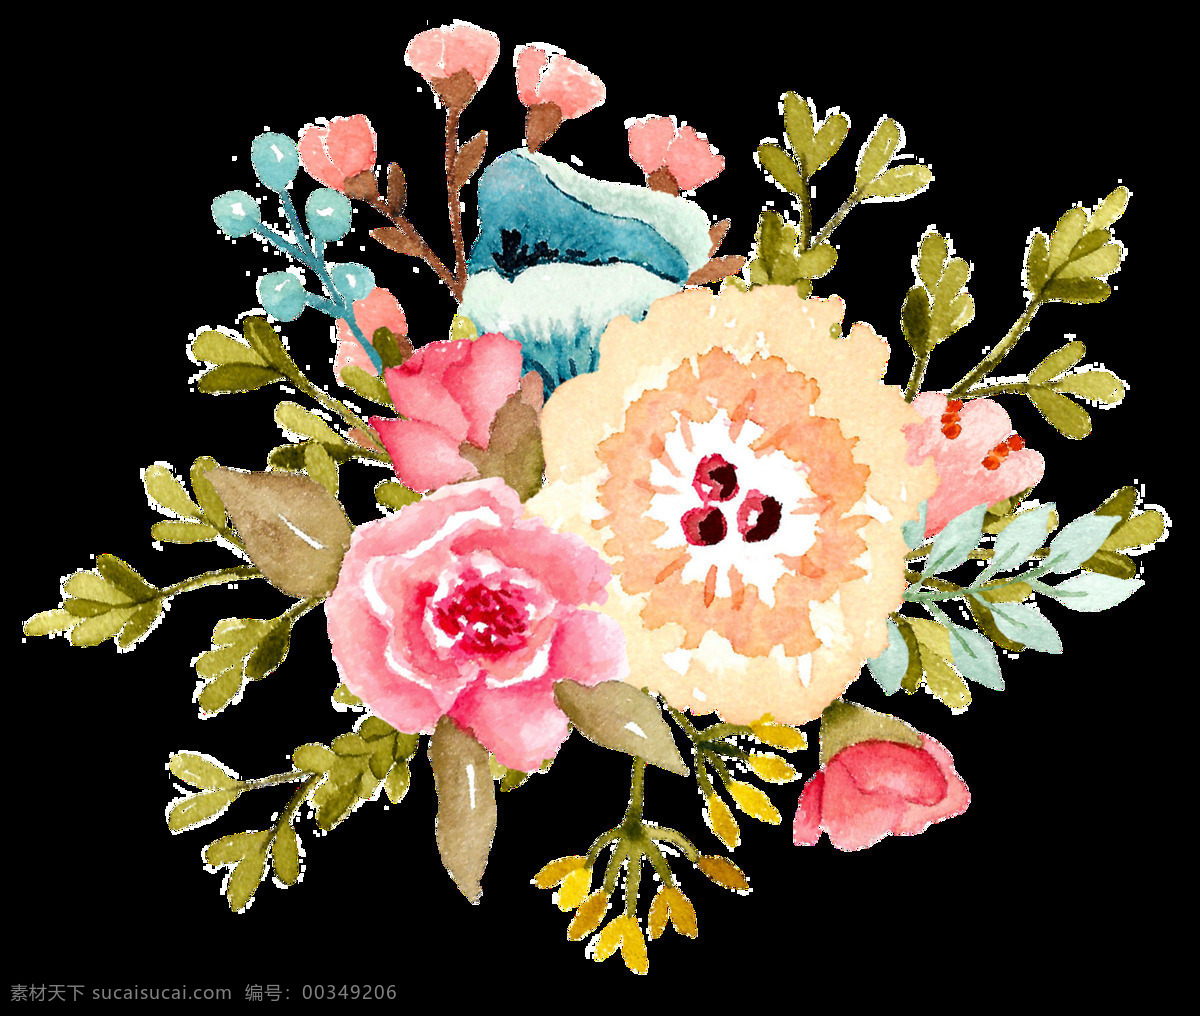 漂亮 花卉 卡通 透明 装饰 设计素材 背景素材